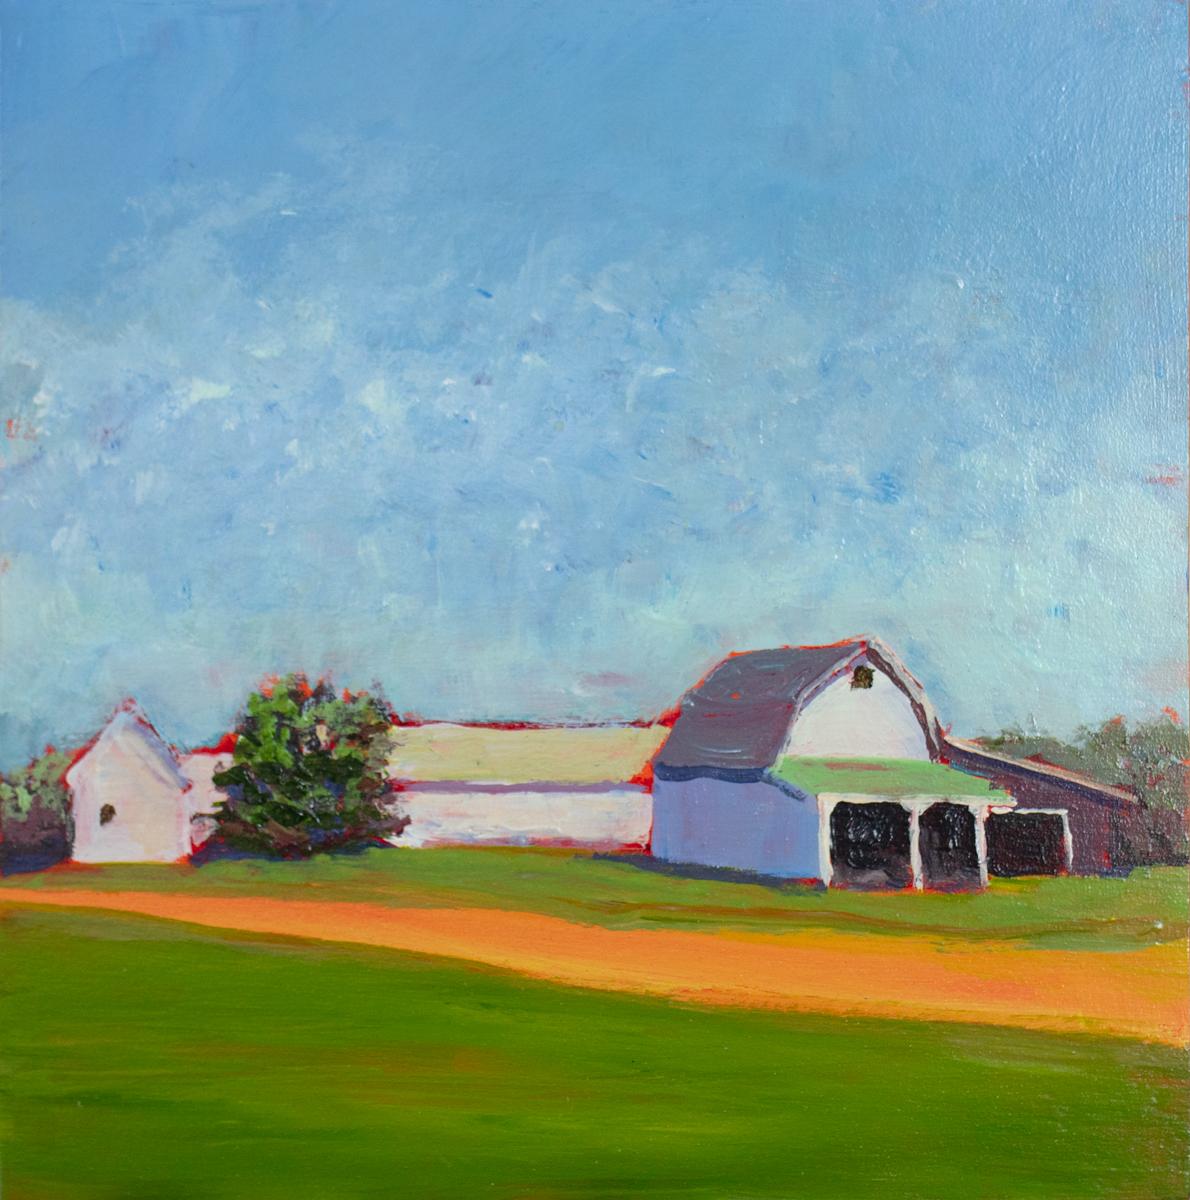 Carol Young Landscape Painting – "Roanoke Barns" Zeitgenössische Landschaftsmalerei